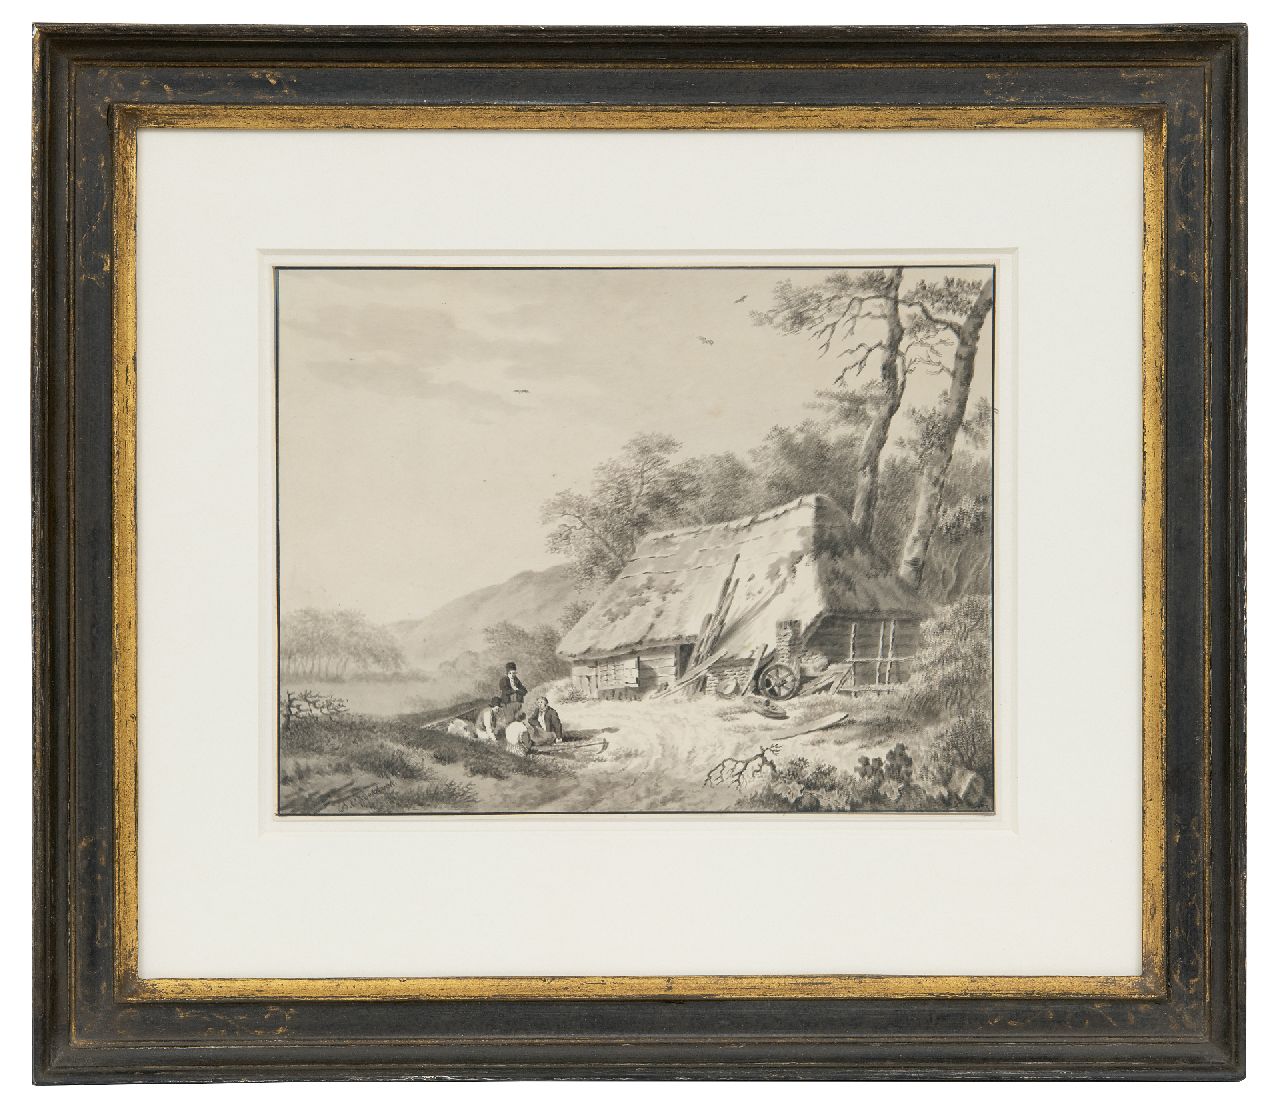 Koekkoek B.C.  | Barend Cornelis Koekkoek, Rustend landvolk bij een schuur, pen, penseel en inkt op papier 17,5 x 22,7 cm, gesigneerd linksonder